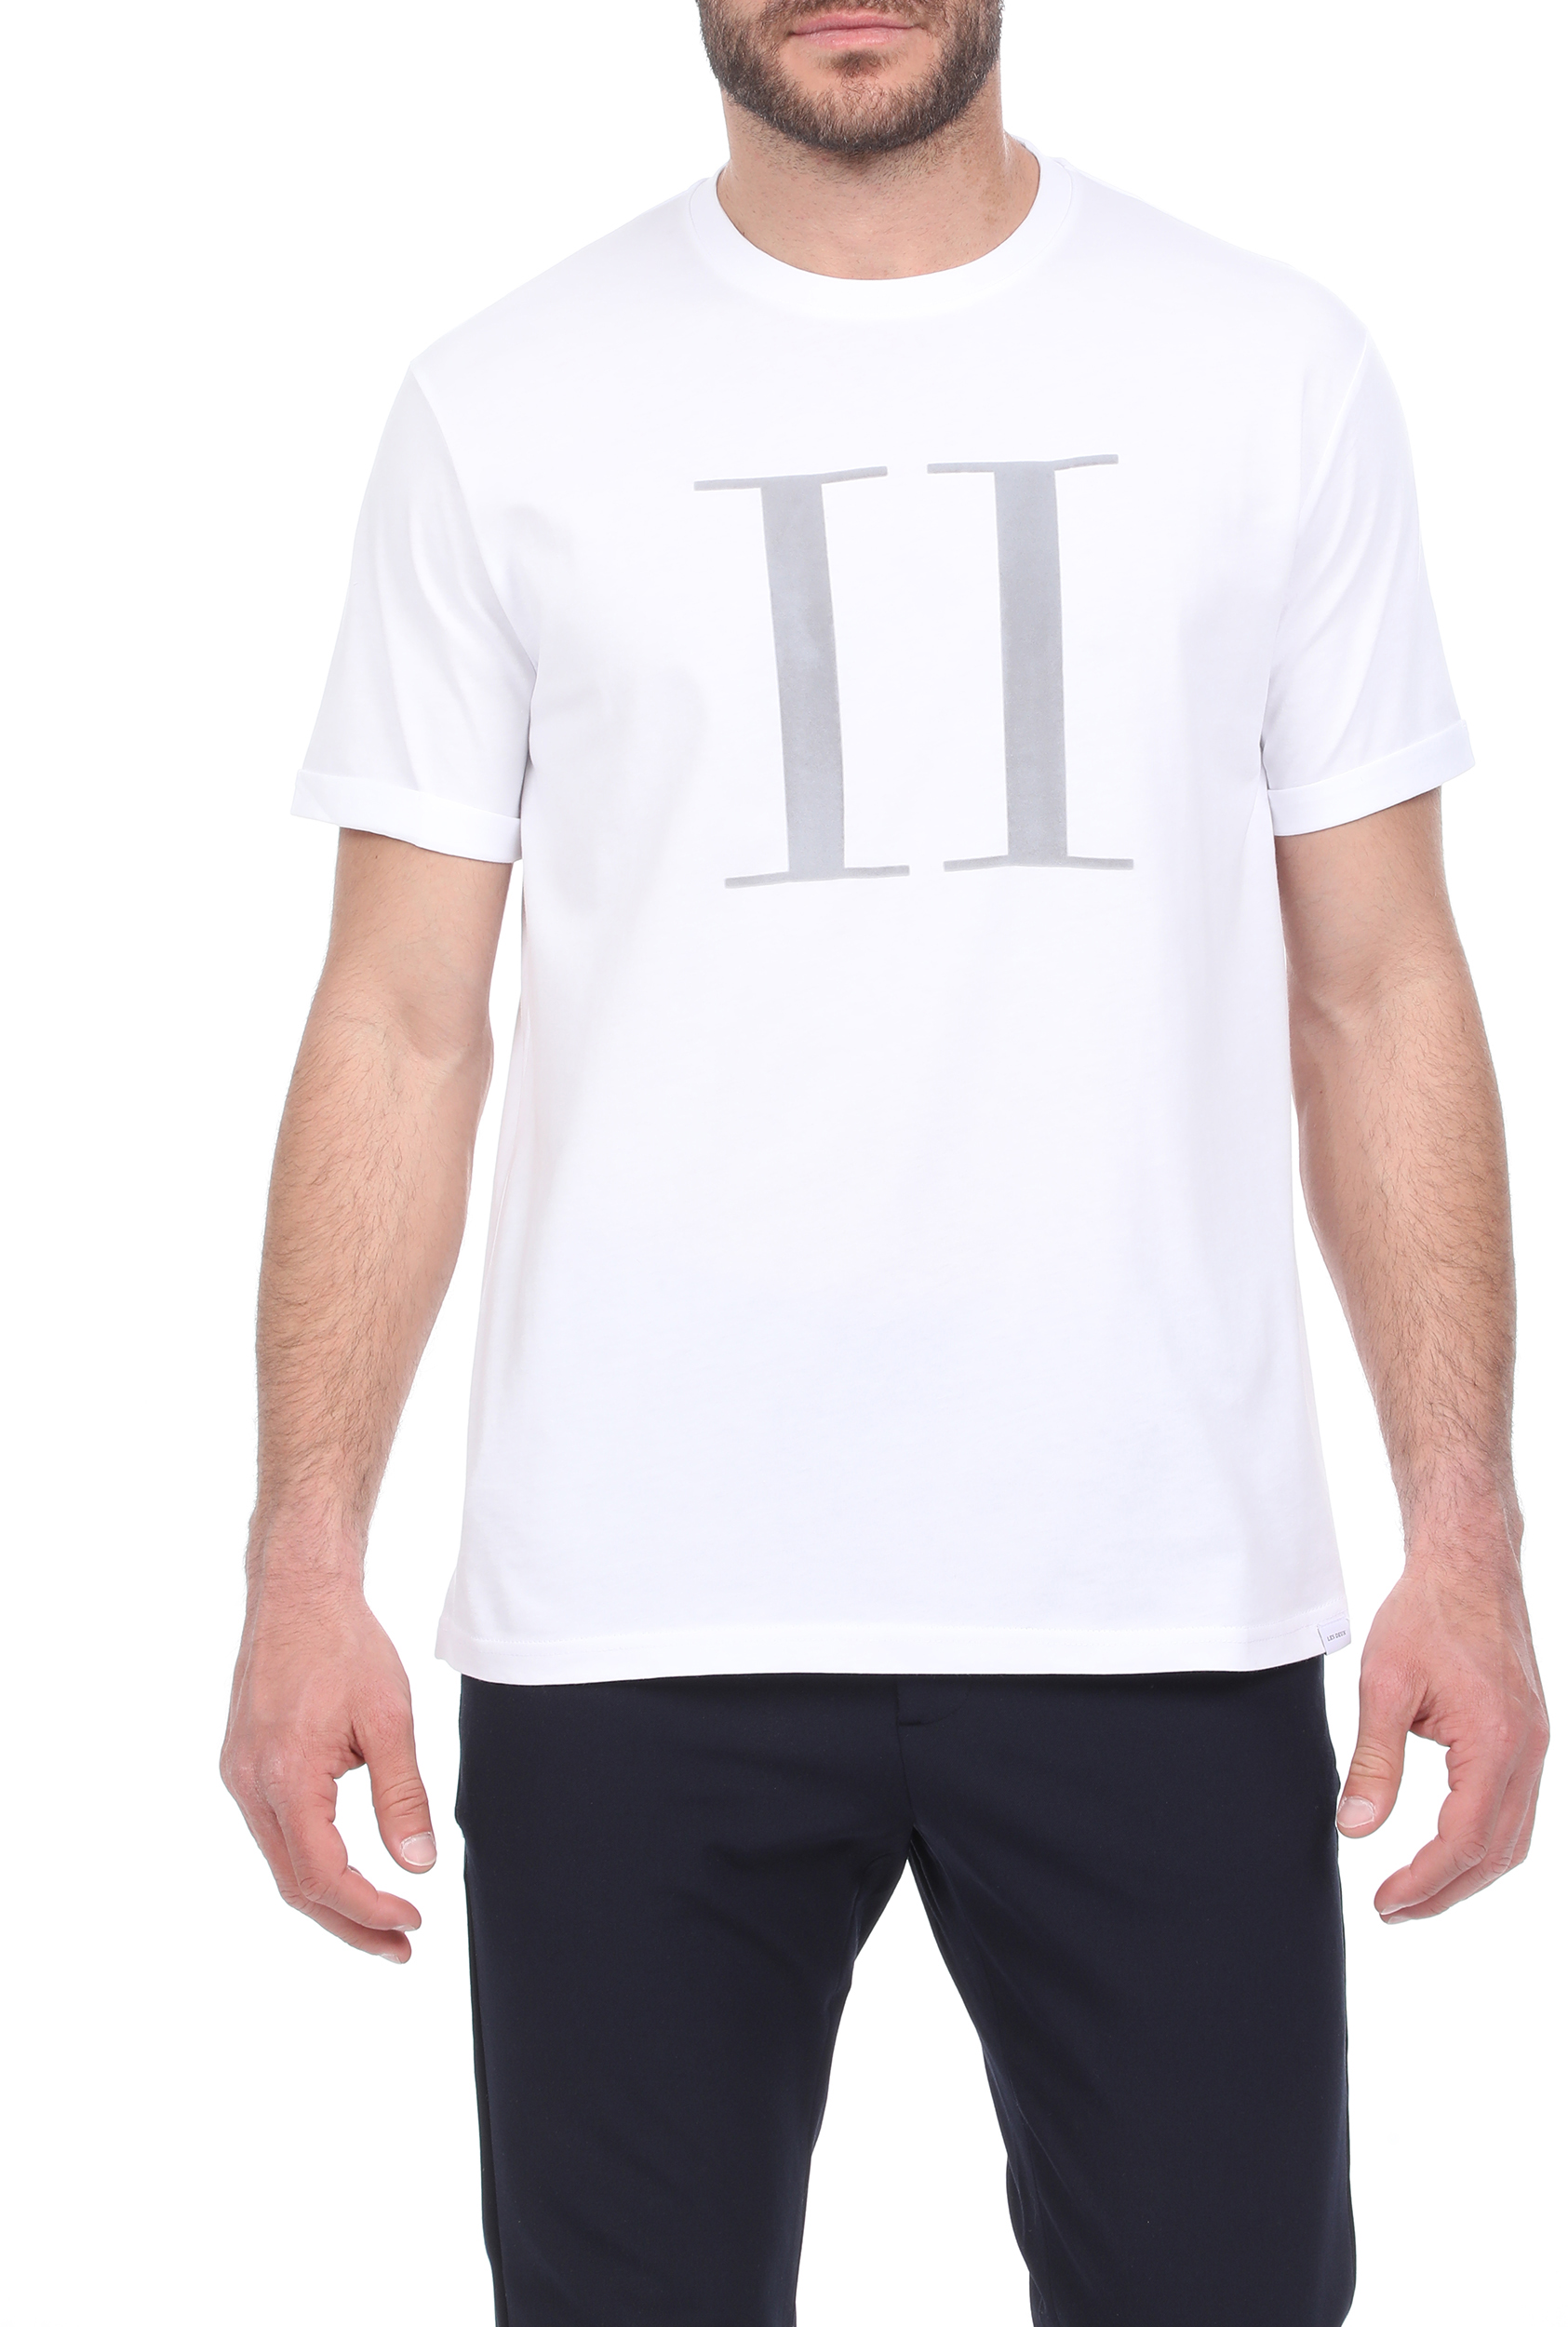 Ανδρικά/Ρούχα/Μπλούζες/Κοντομάνικες LES DEUX - Ανδρικό t-shirt LES DEUX Encore λευκό